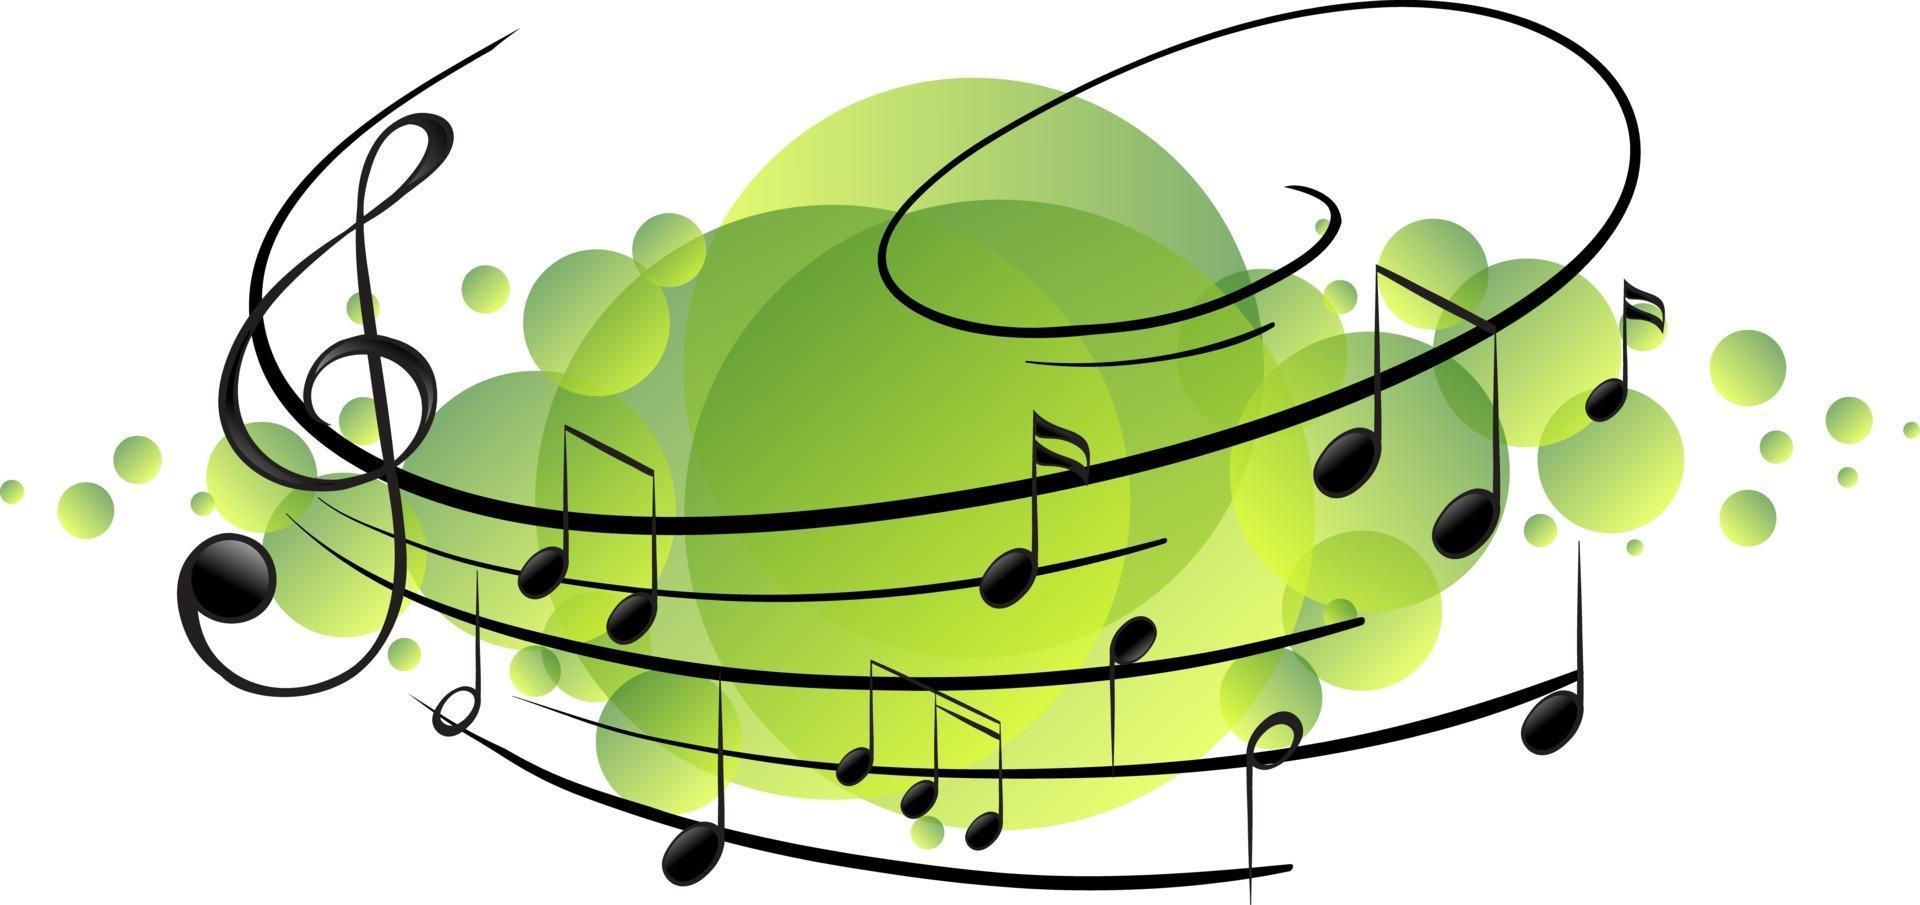 muzikale melodiesymbolen op groene vlek vector